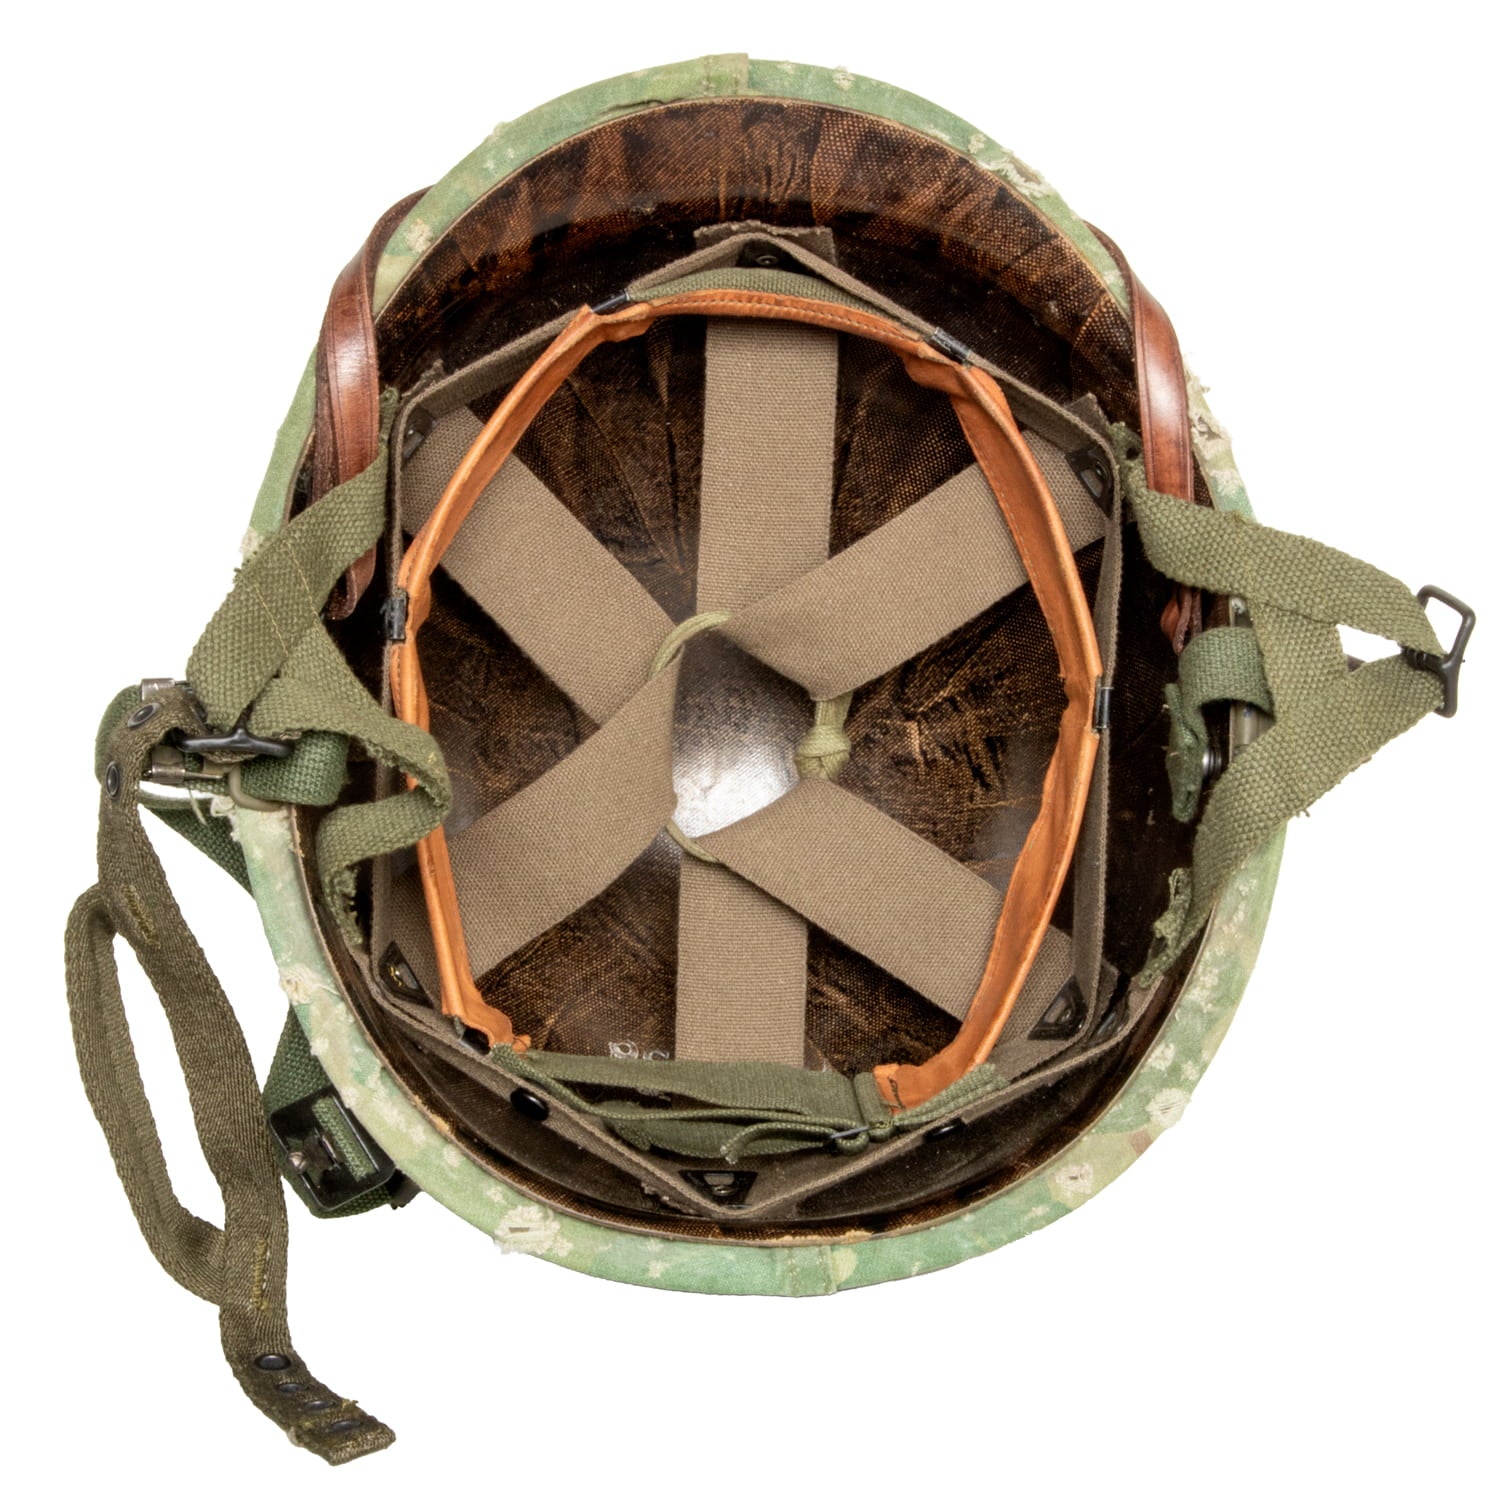 Casque Complet Vietnam Parachutiste Edition Limitée précoce vue intérieur du sous casque